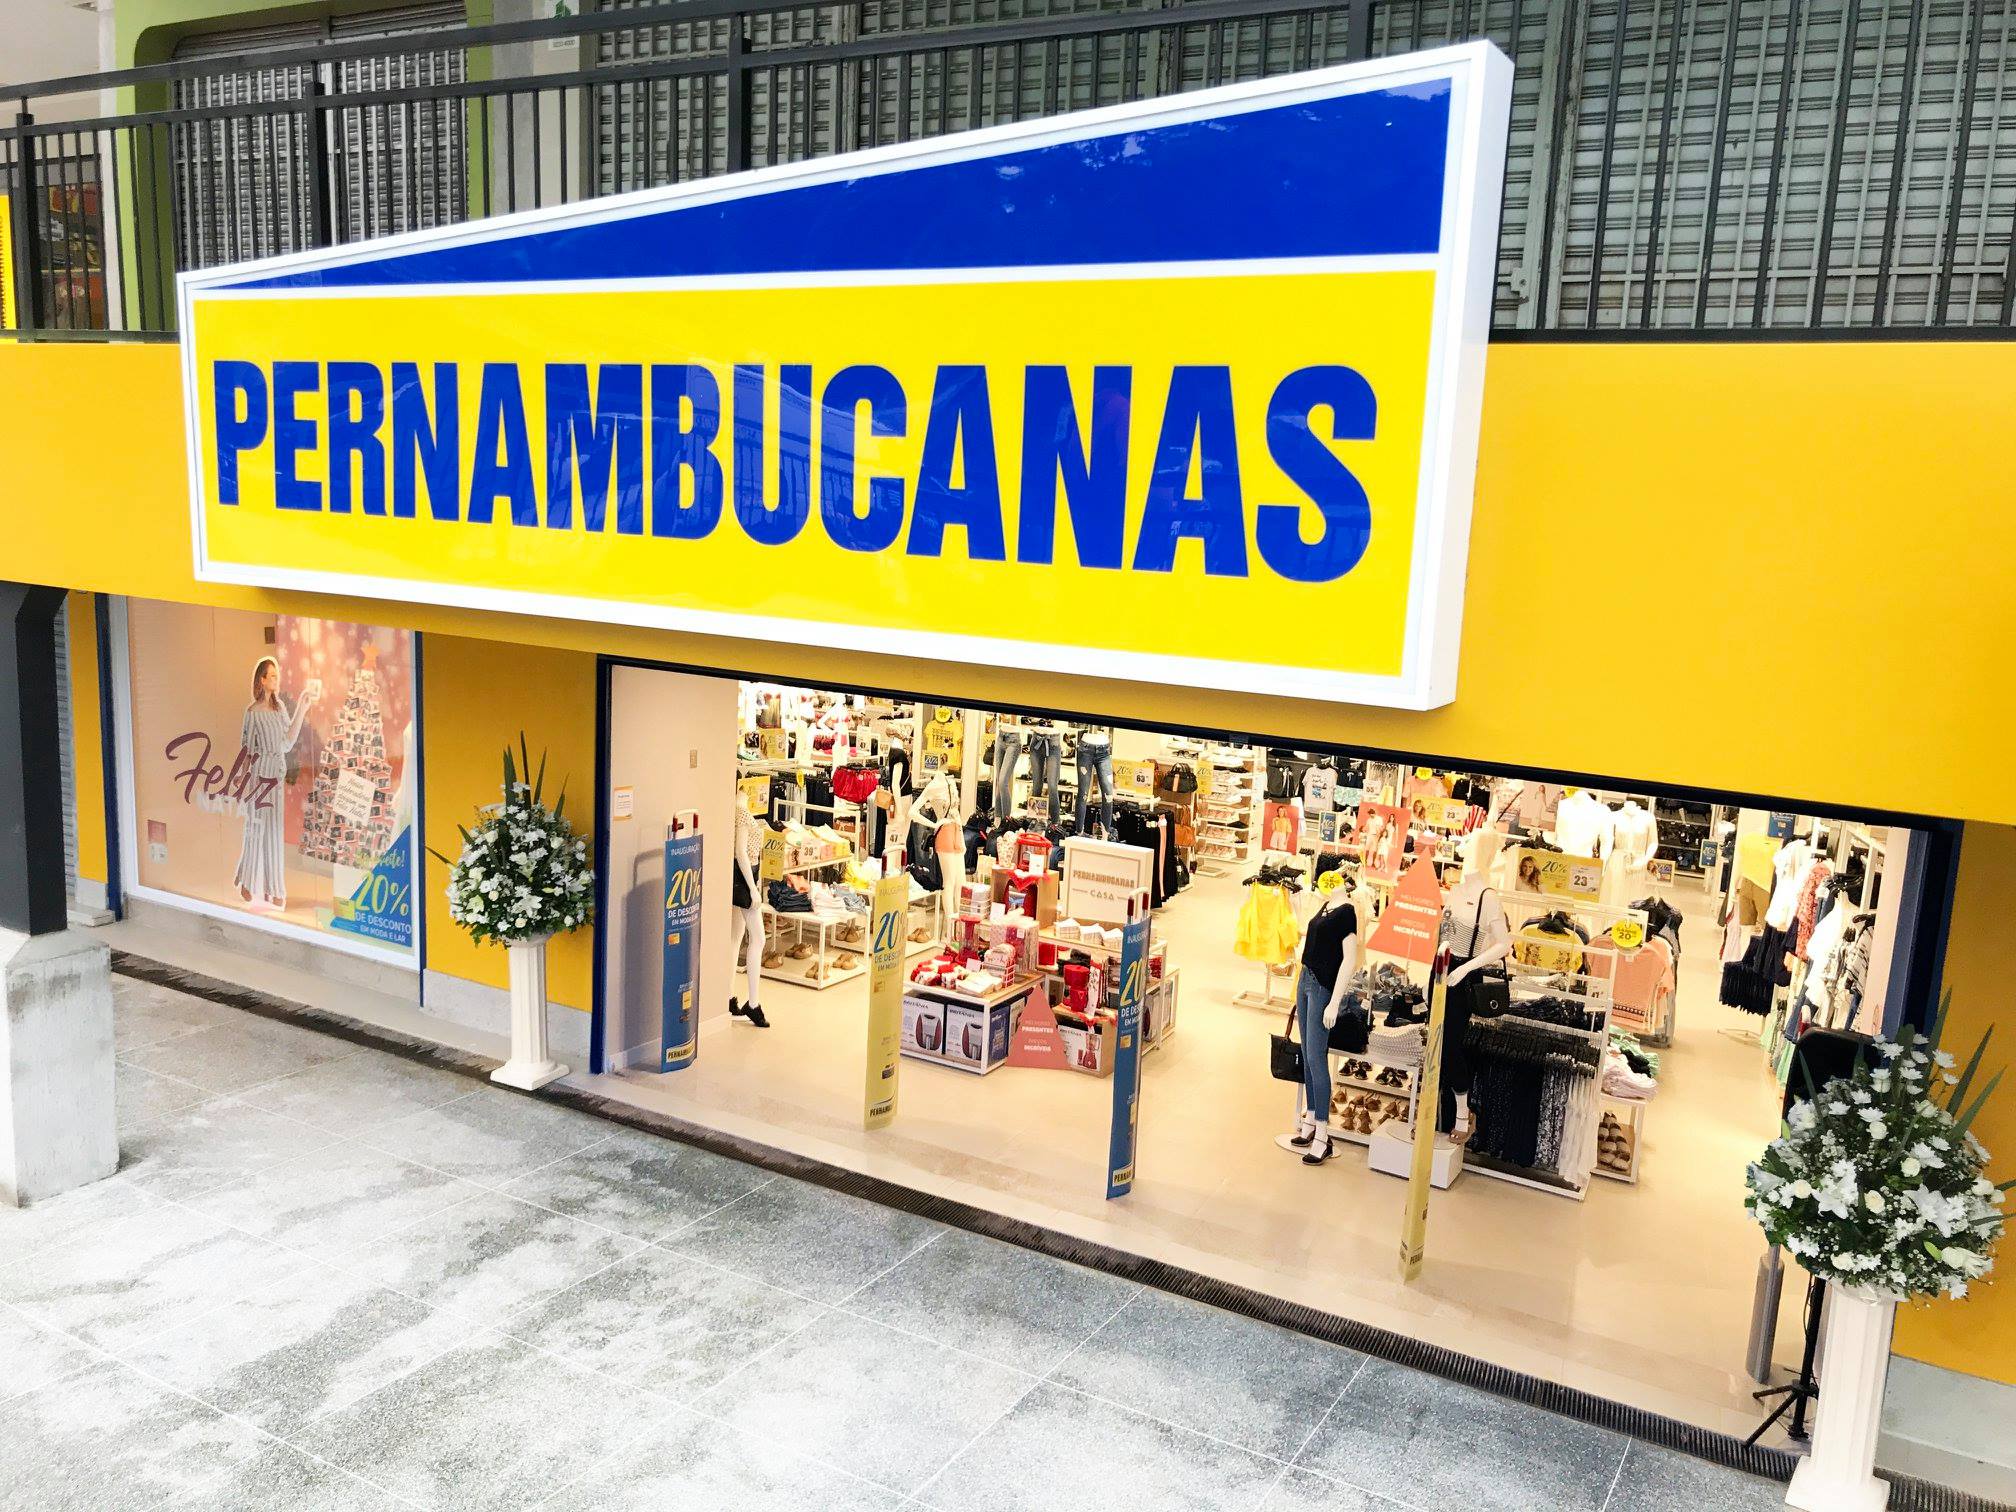 Pernambucanas - A moda plus size da Pernambucanas tem